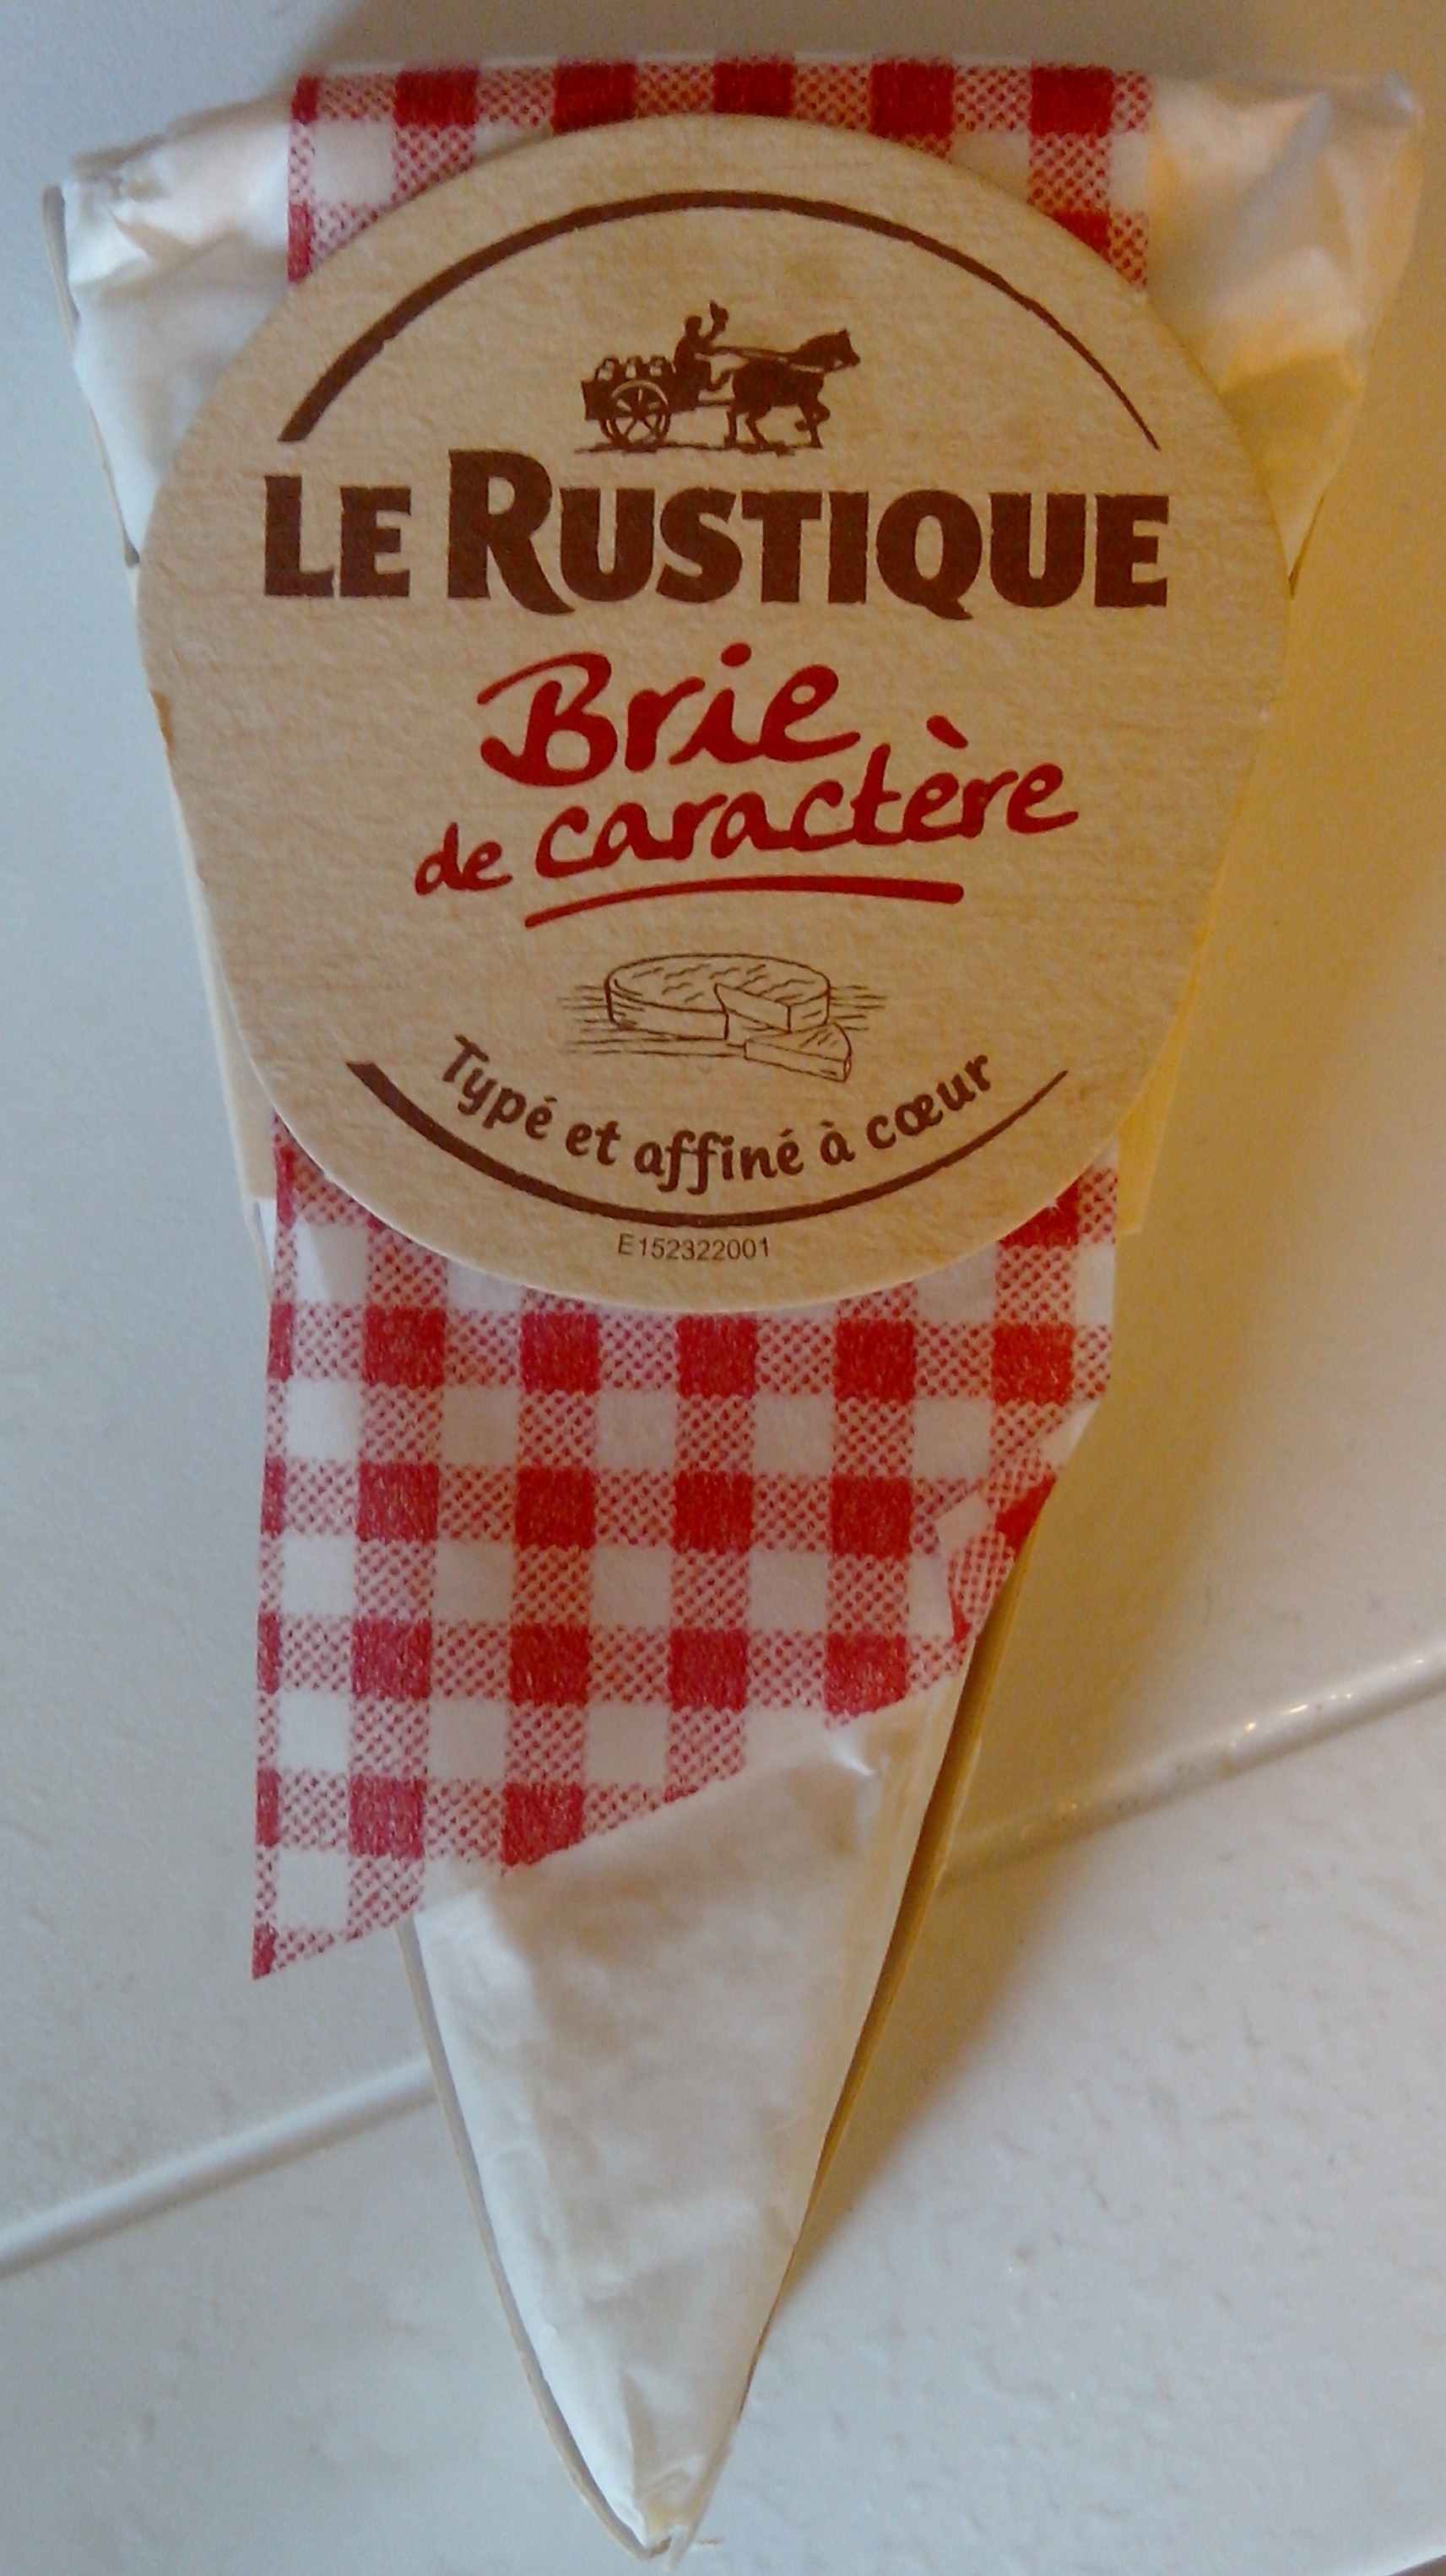 Brie de caractère (23 % MG) - Product - fr